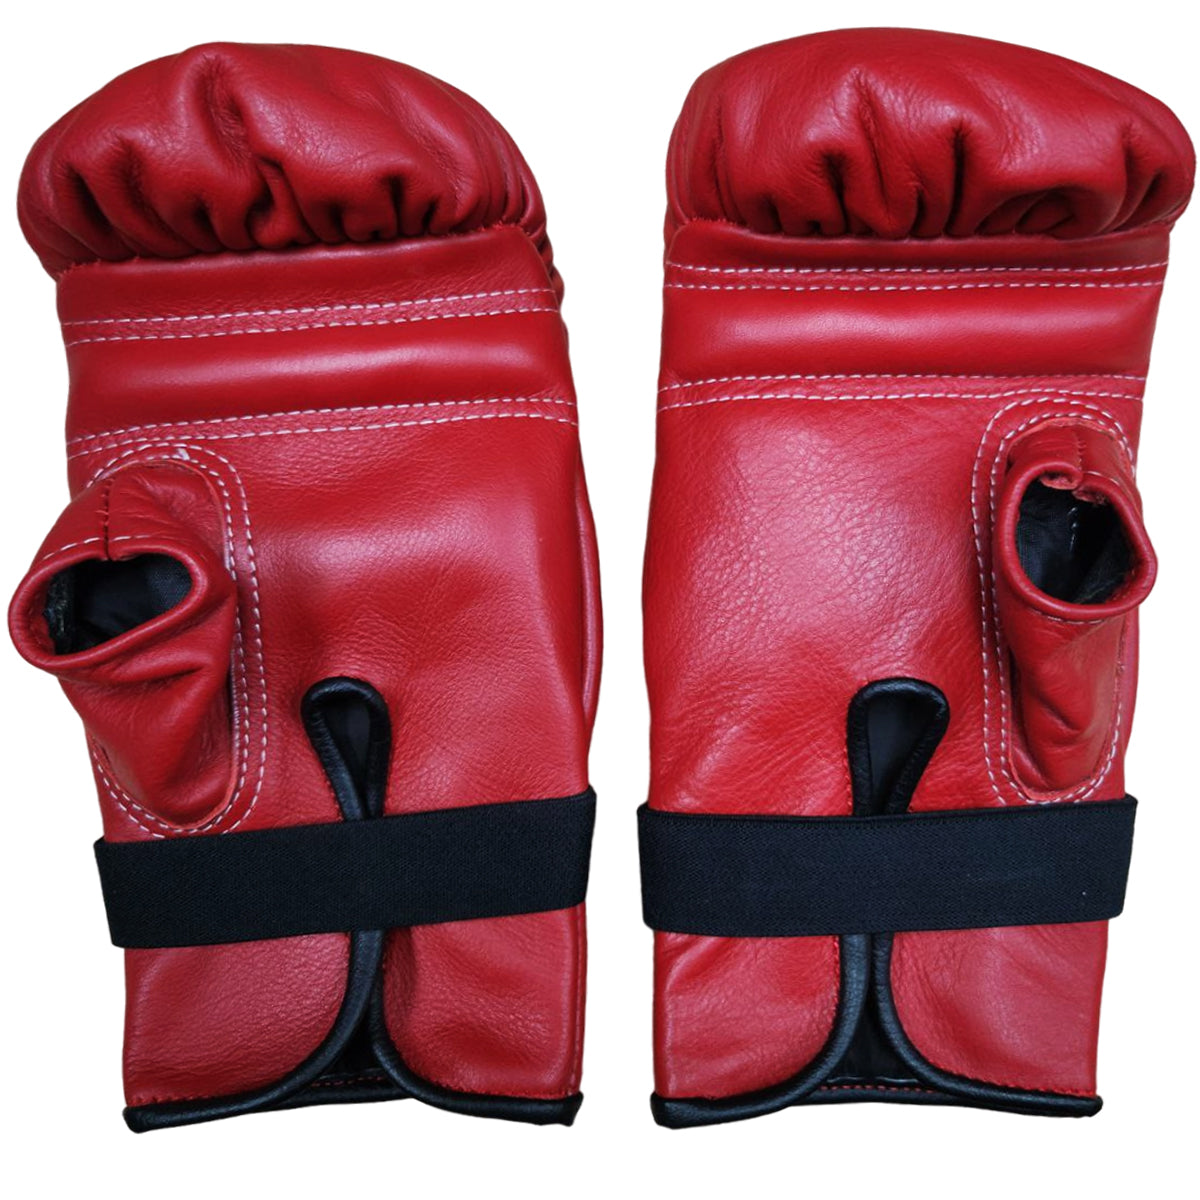 Bag Gloves K Brand K-KBG Red Open Thumb  Muay Thai